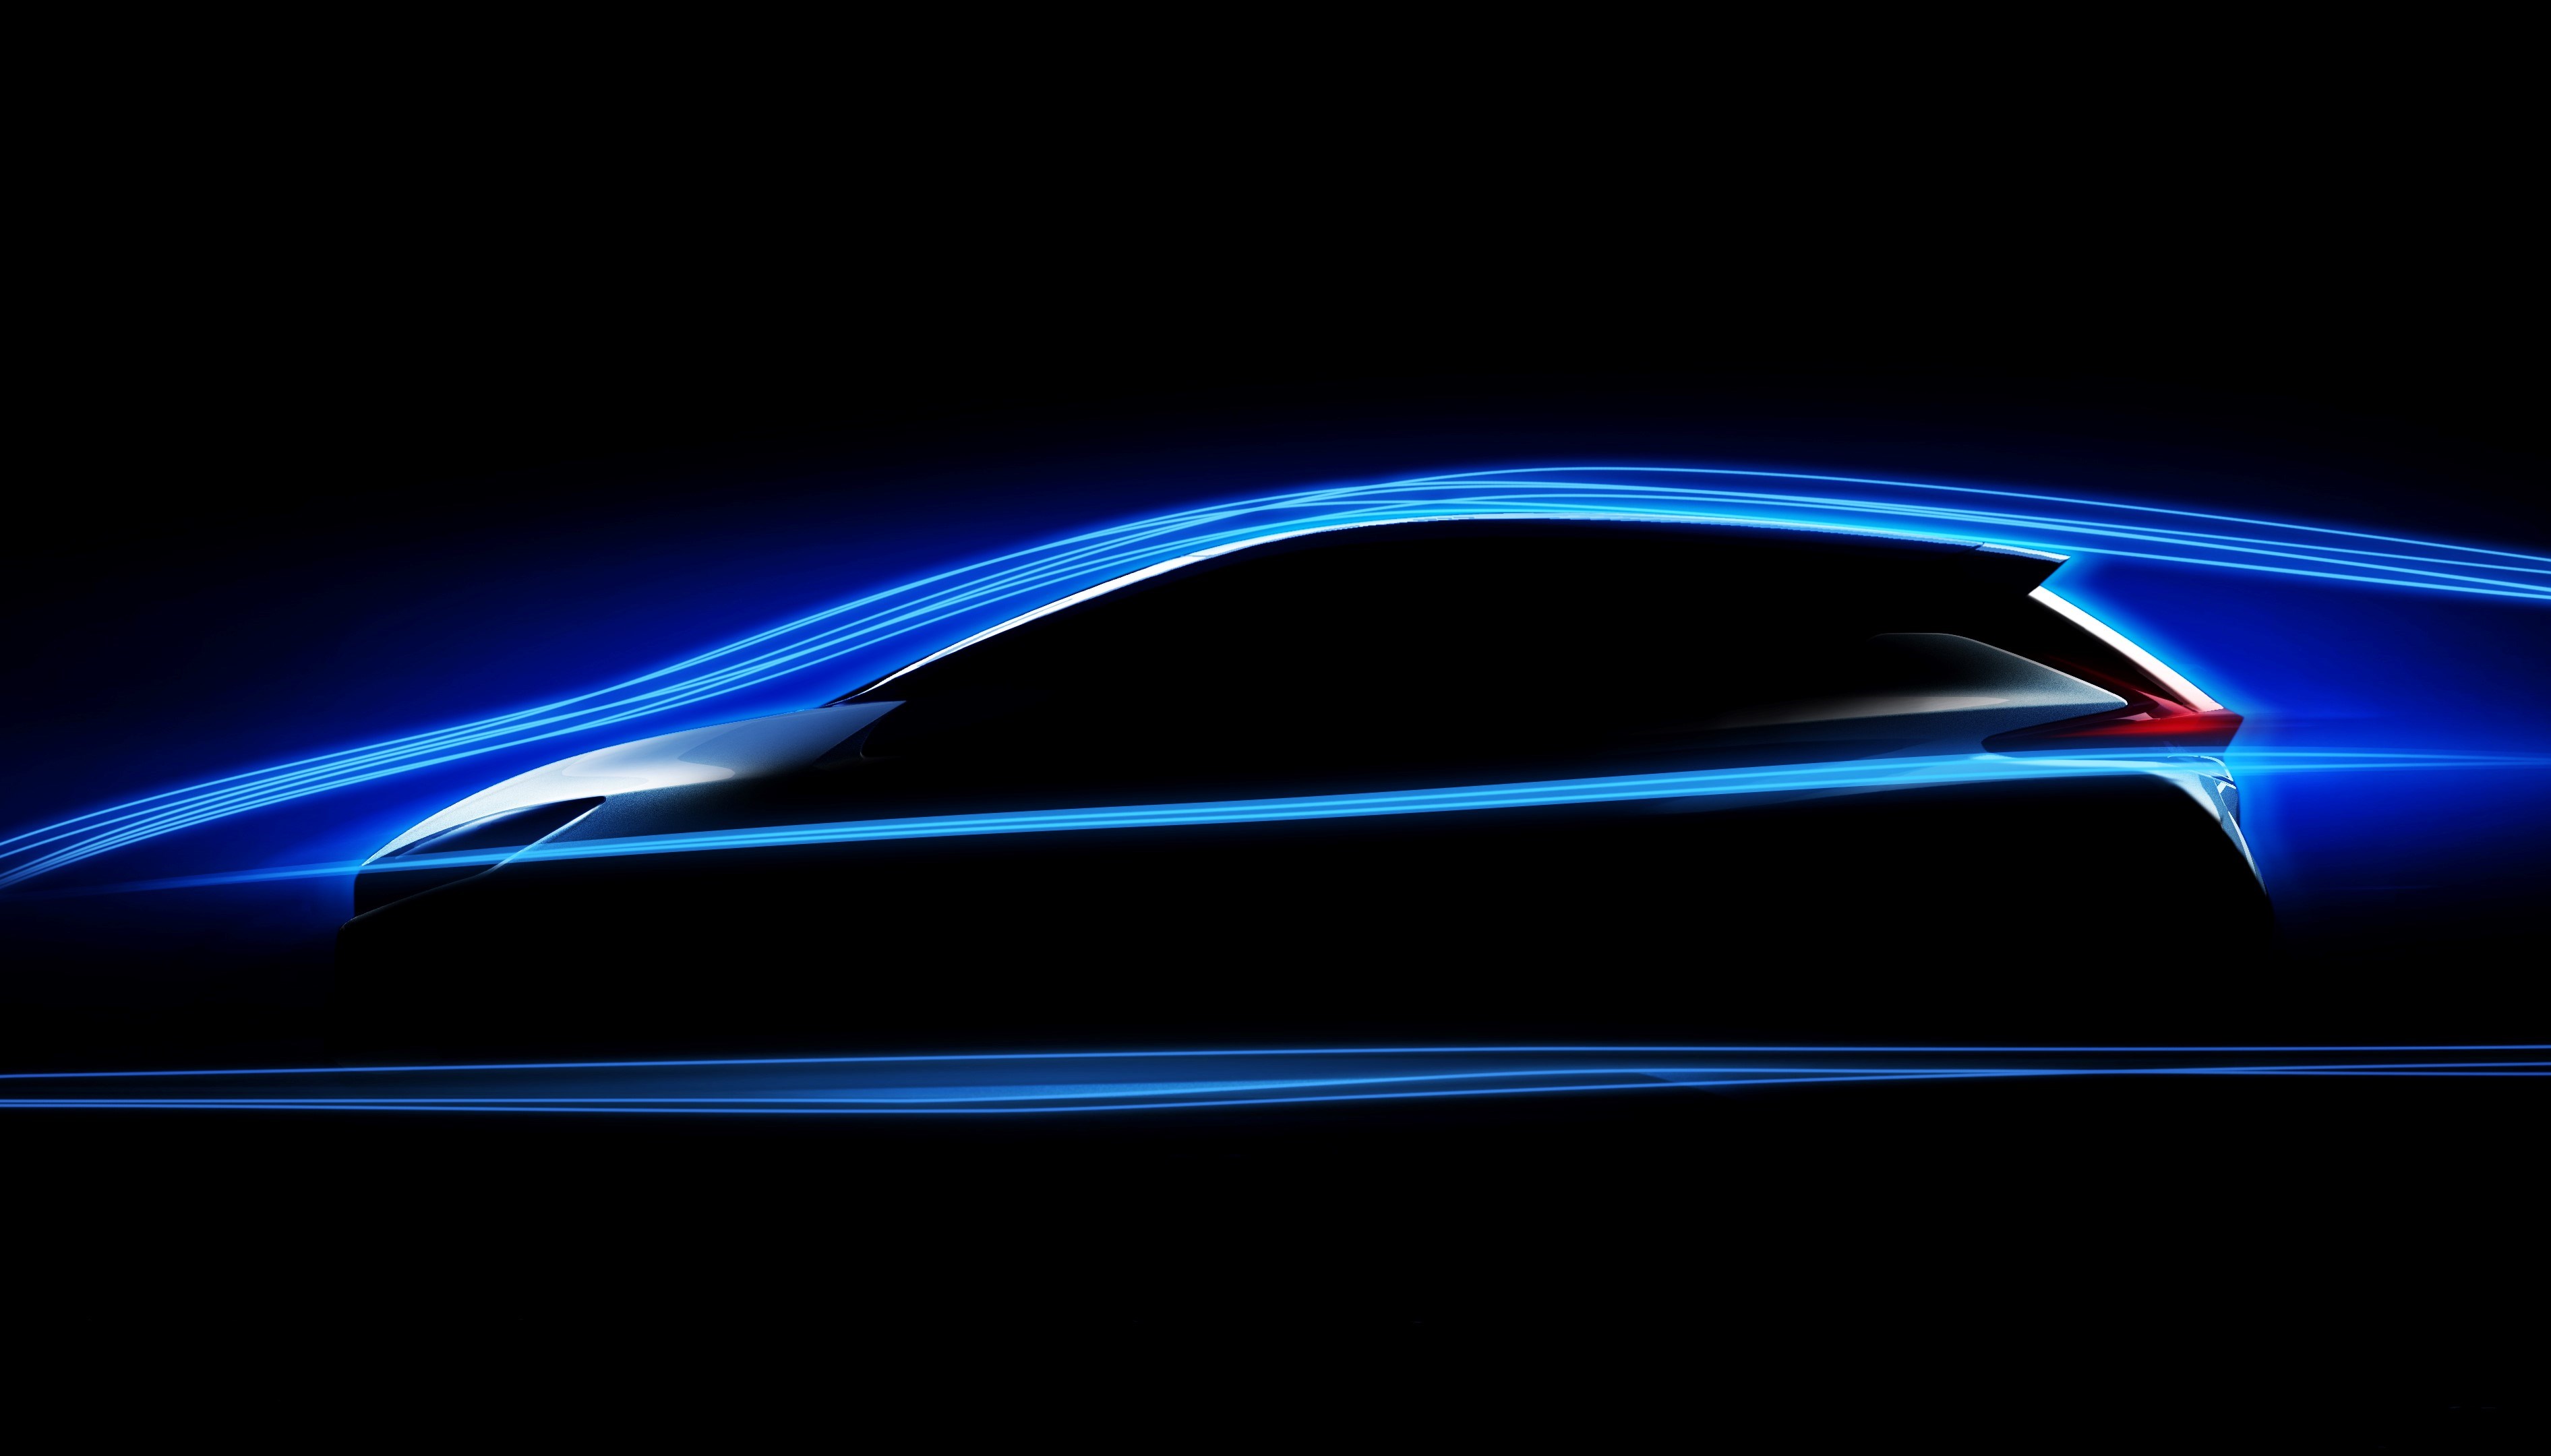 Zweite Generation des Elektroauto Nissan Leaf, so könnte die Silhouette des Stromers aussehen. Bildquelle: Nissan